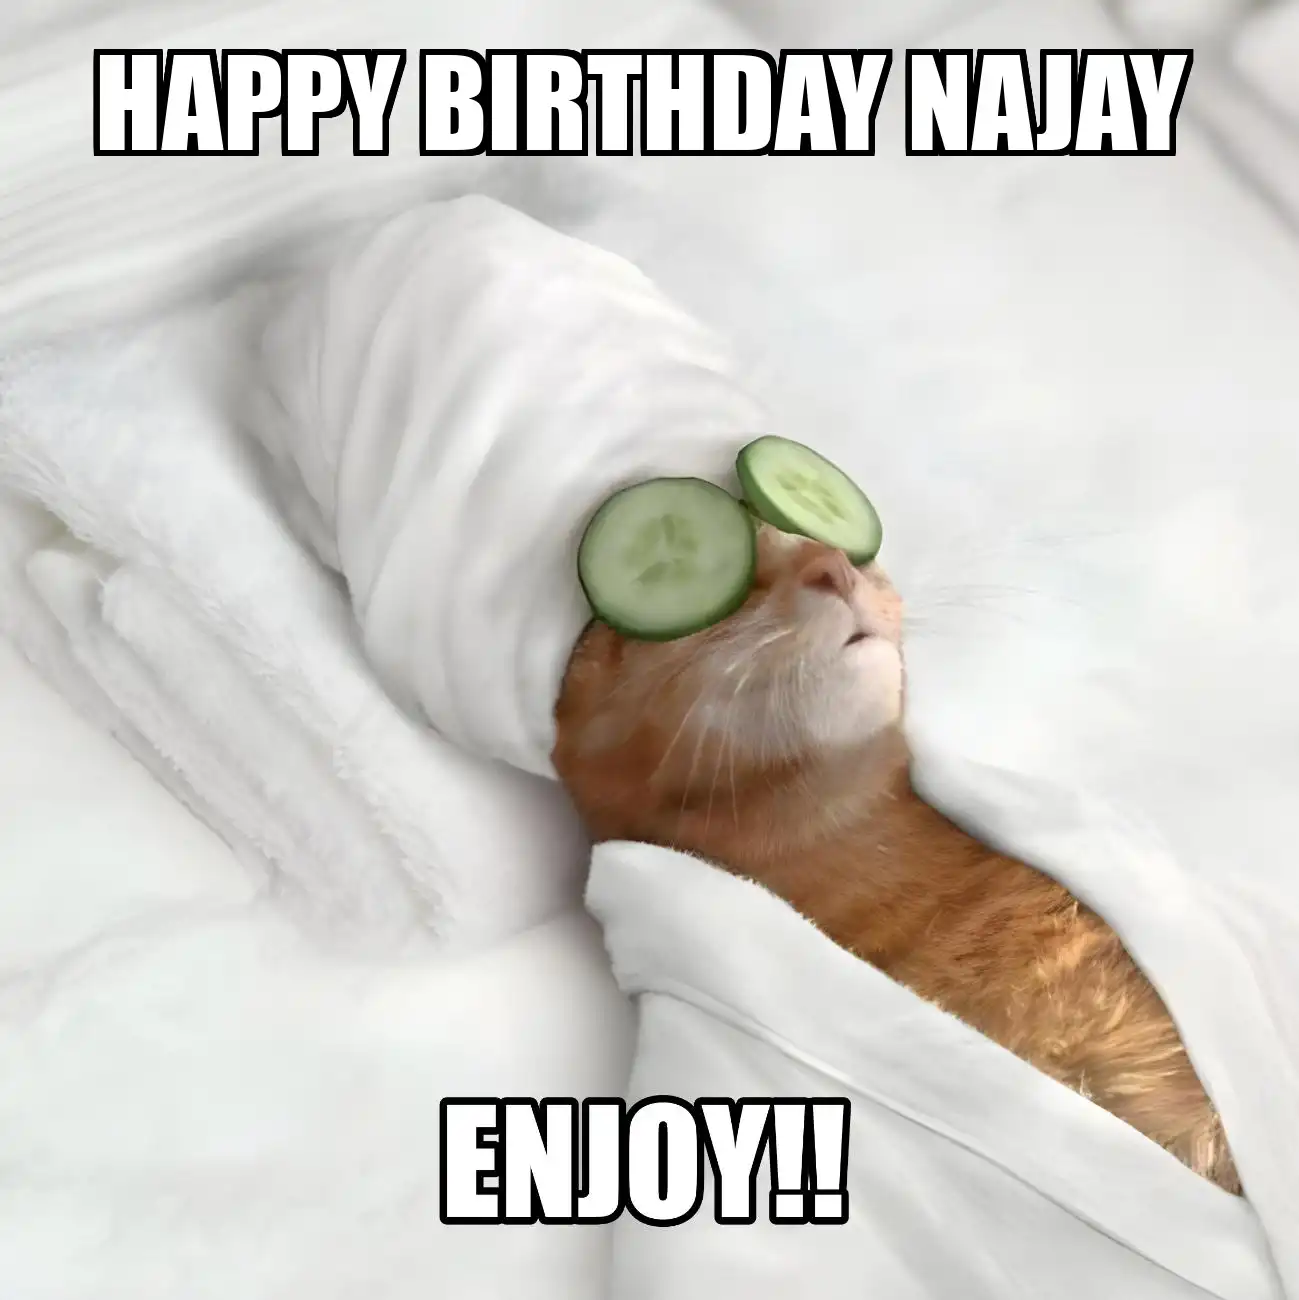 Happy Birthday Najay Enjoy Cat Meme